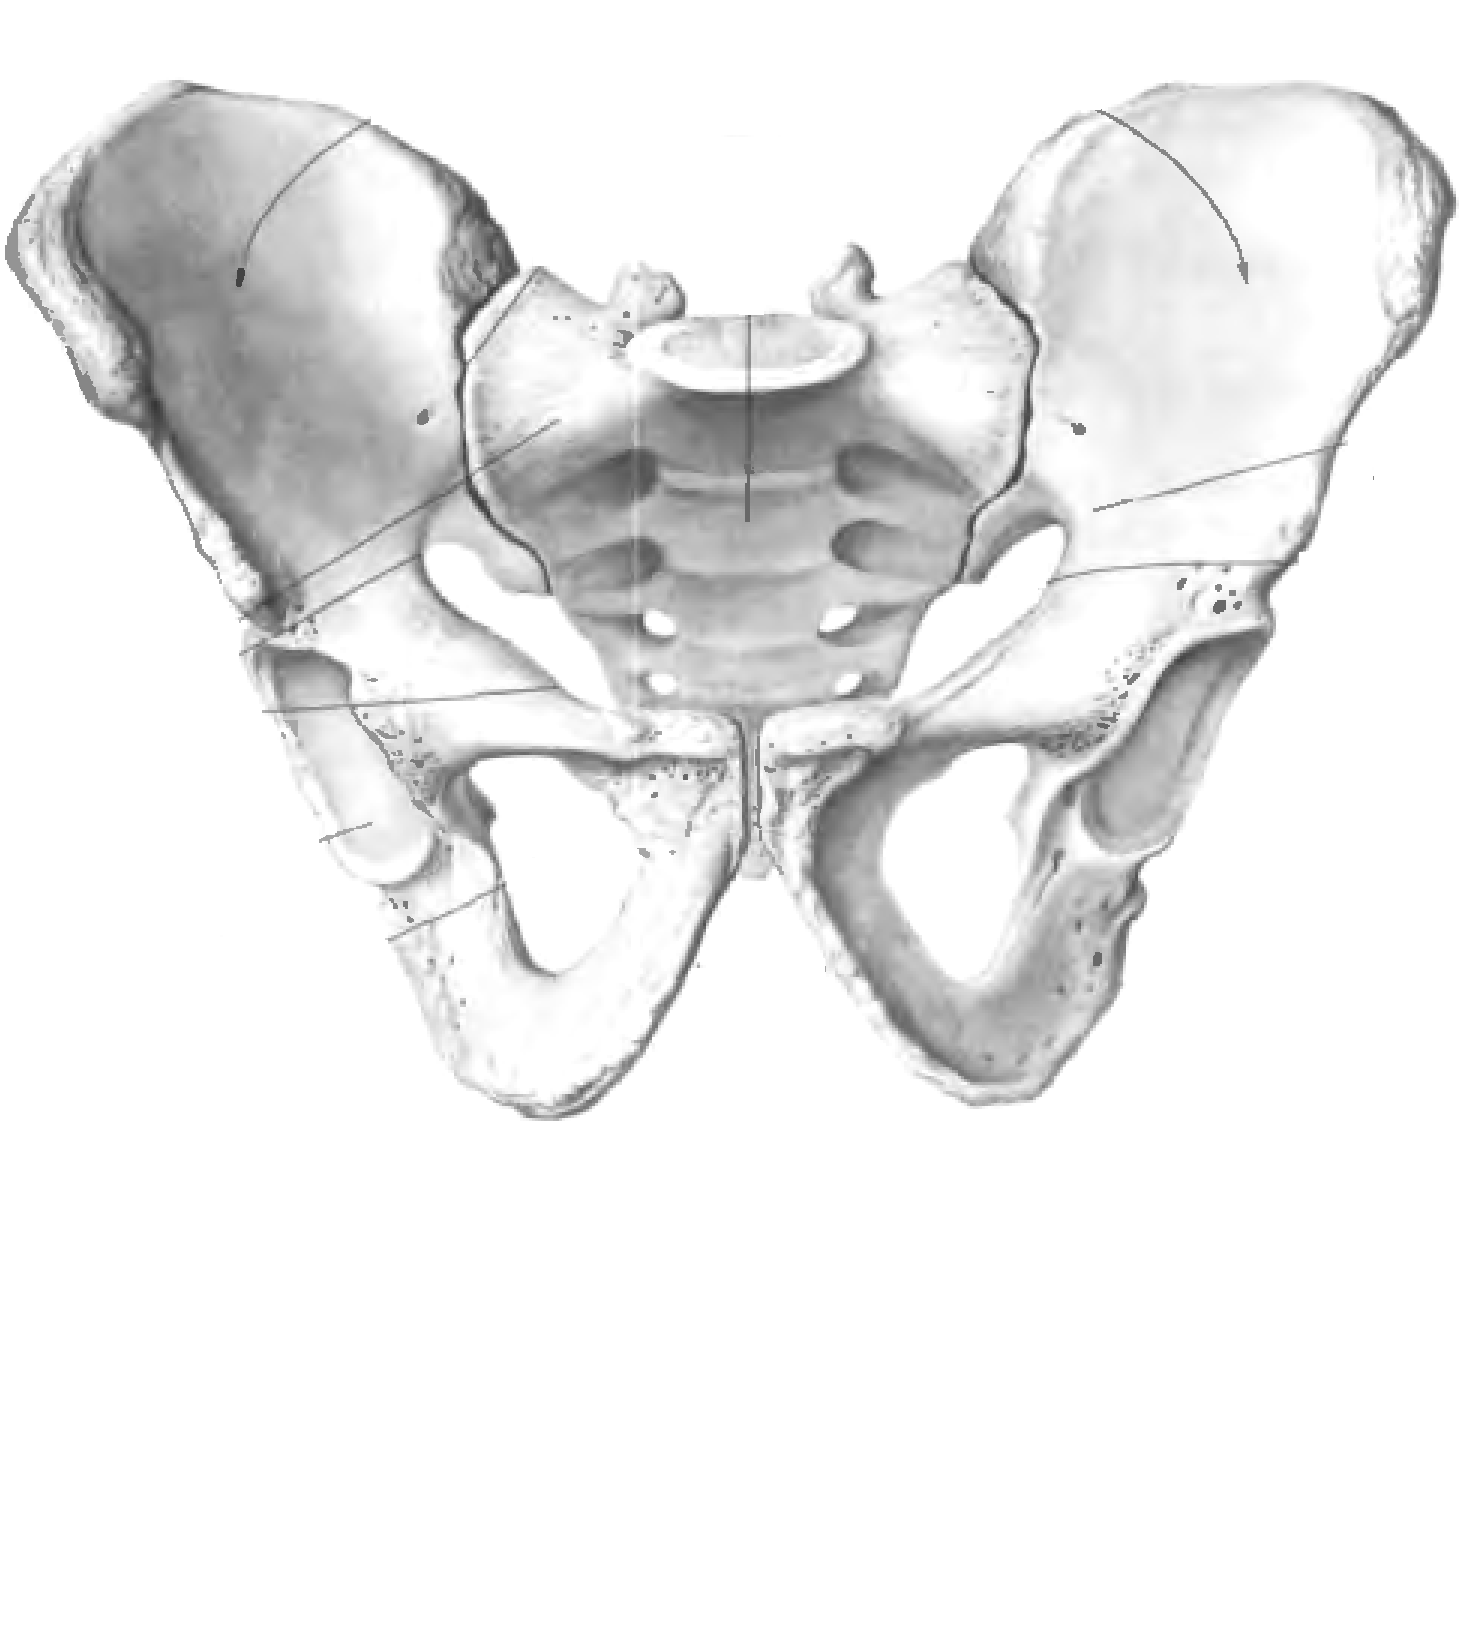 Верхняя подвздошная кость. Кости таза анатомия подвздошная кость. Подвздошная кость таза анатомия человека. Строение подвздошной кости таза. Тазовая кость анатомия Синельников.